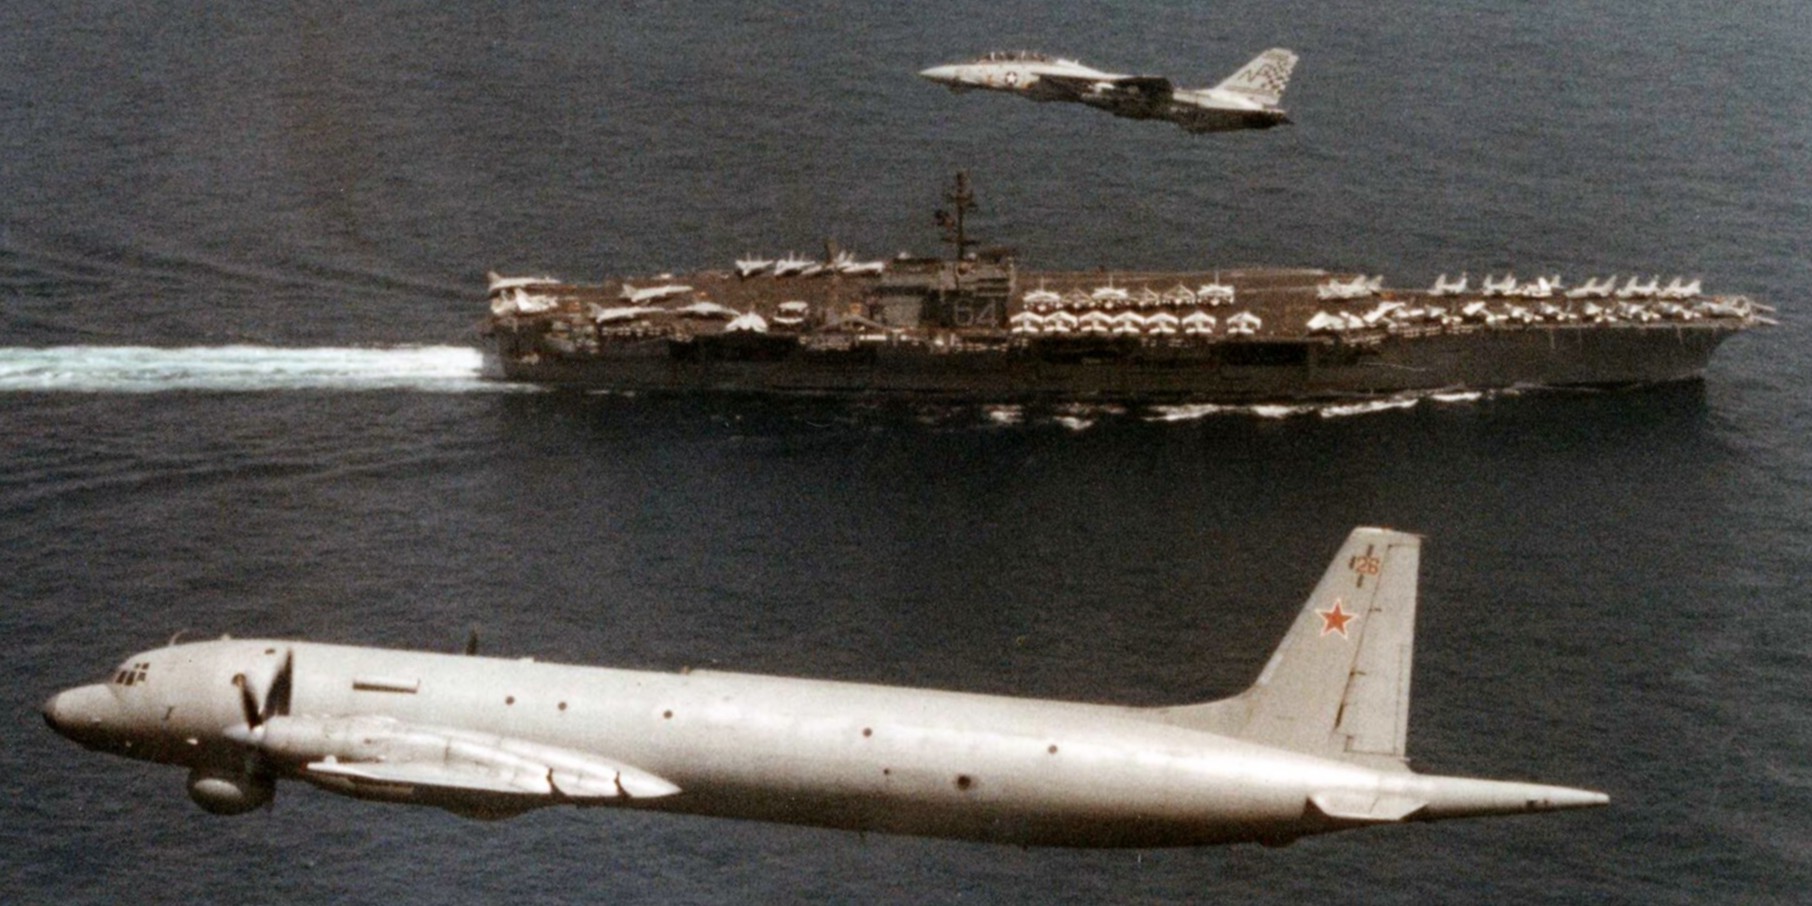 cv-64 uss constellation kitty hawk class aircraft carrier soviet il-38 59